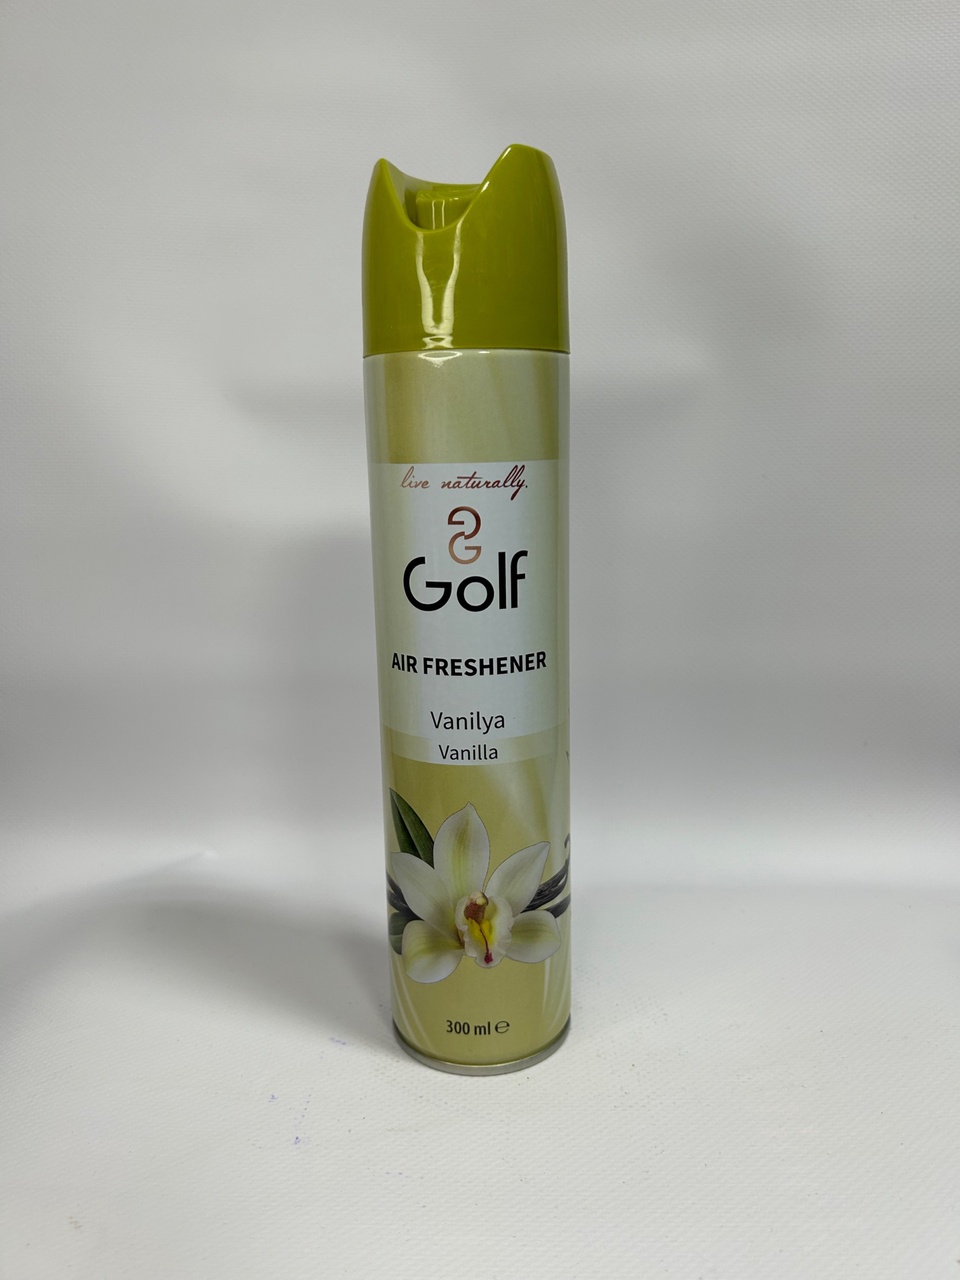 Освежитель воздуха Golf с ароматом «Ваниль» - 130 ₽, заказать онлайн.